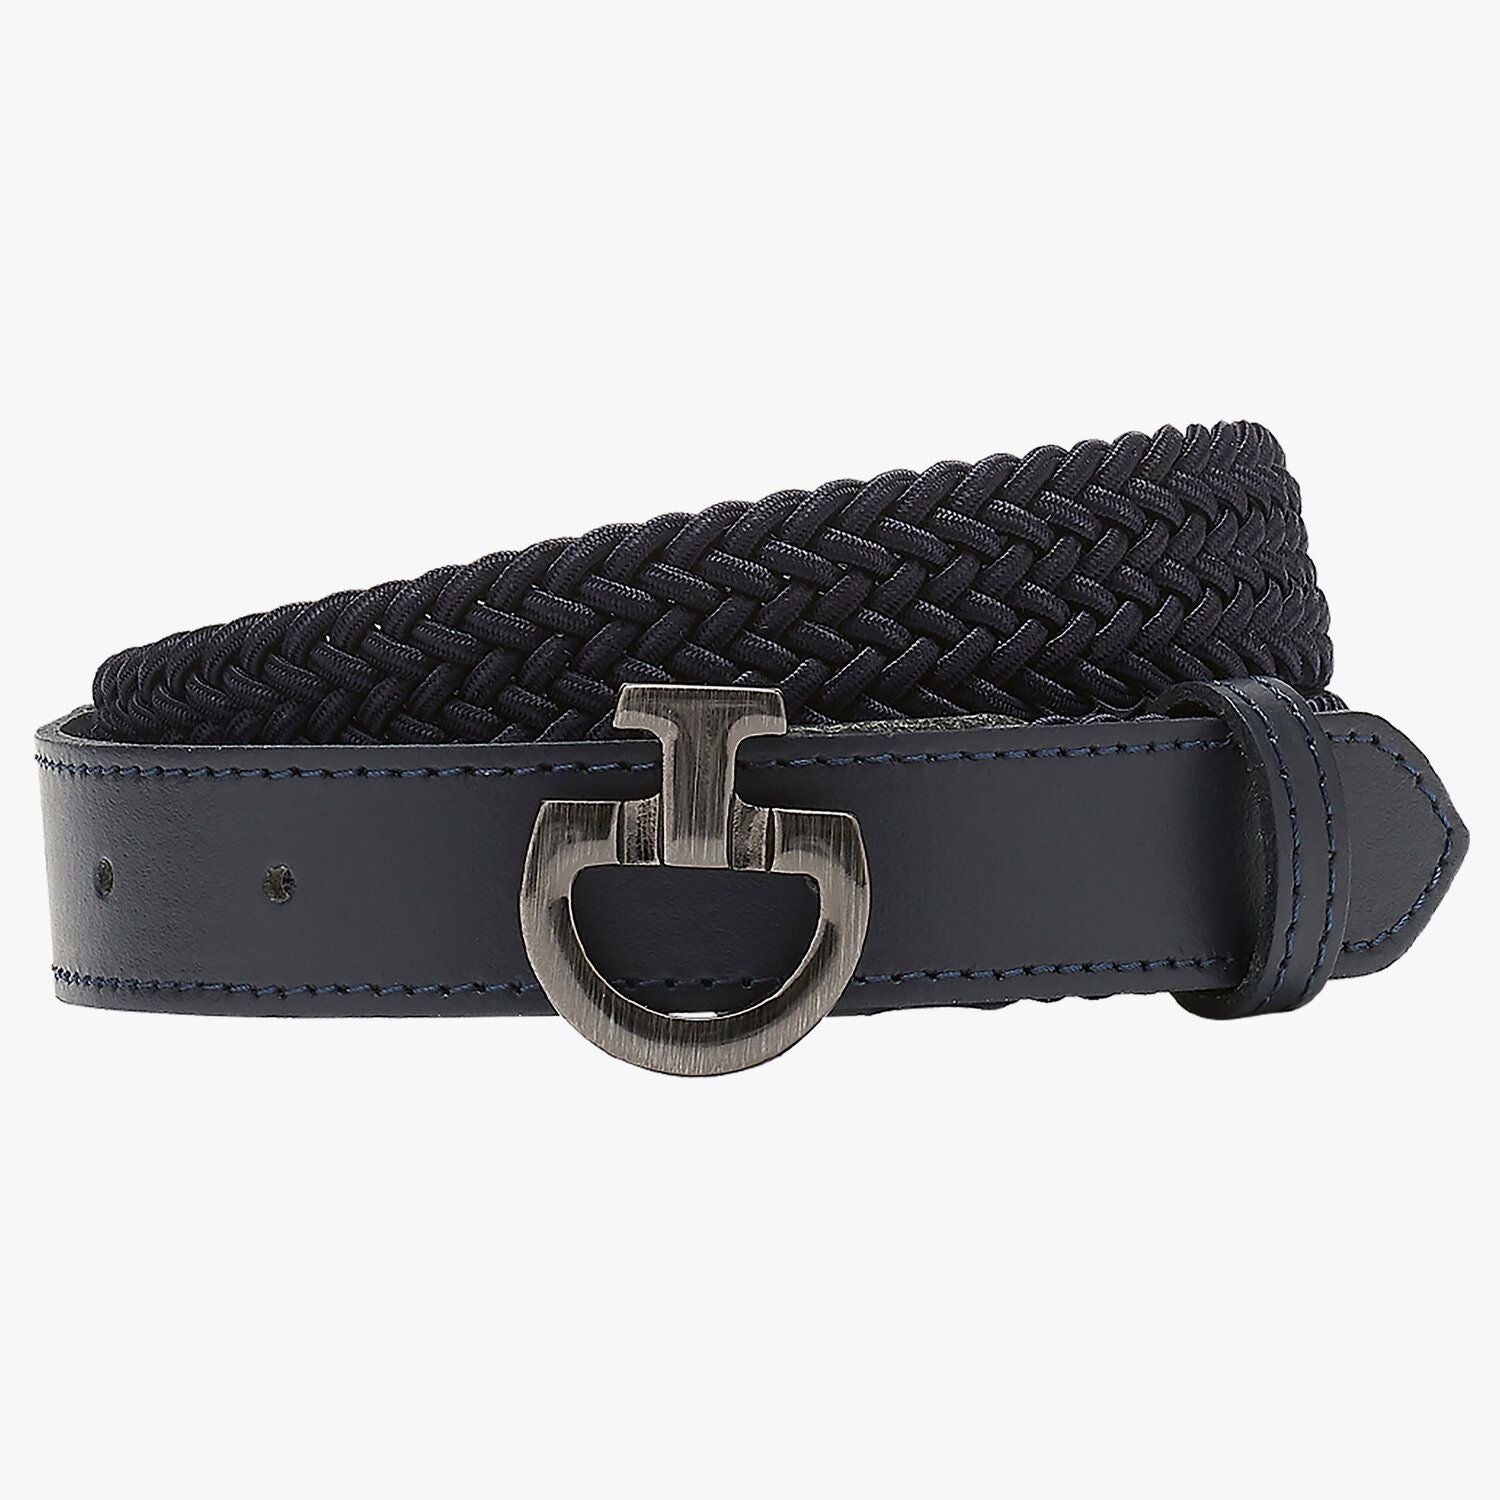 Children’s belt “Rayon Dark Blue” 